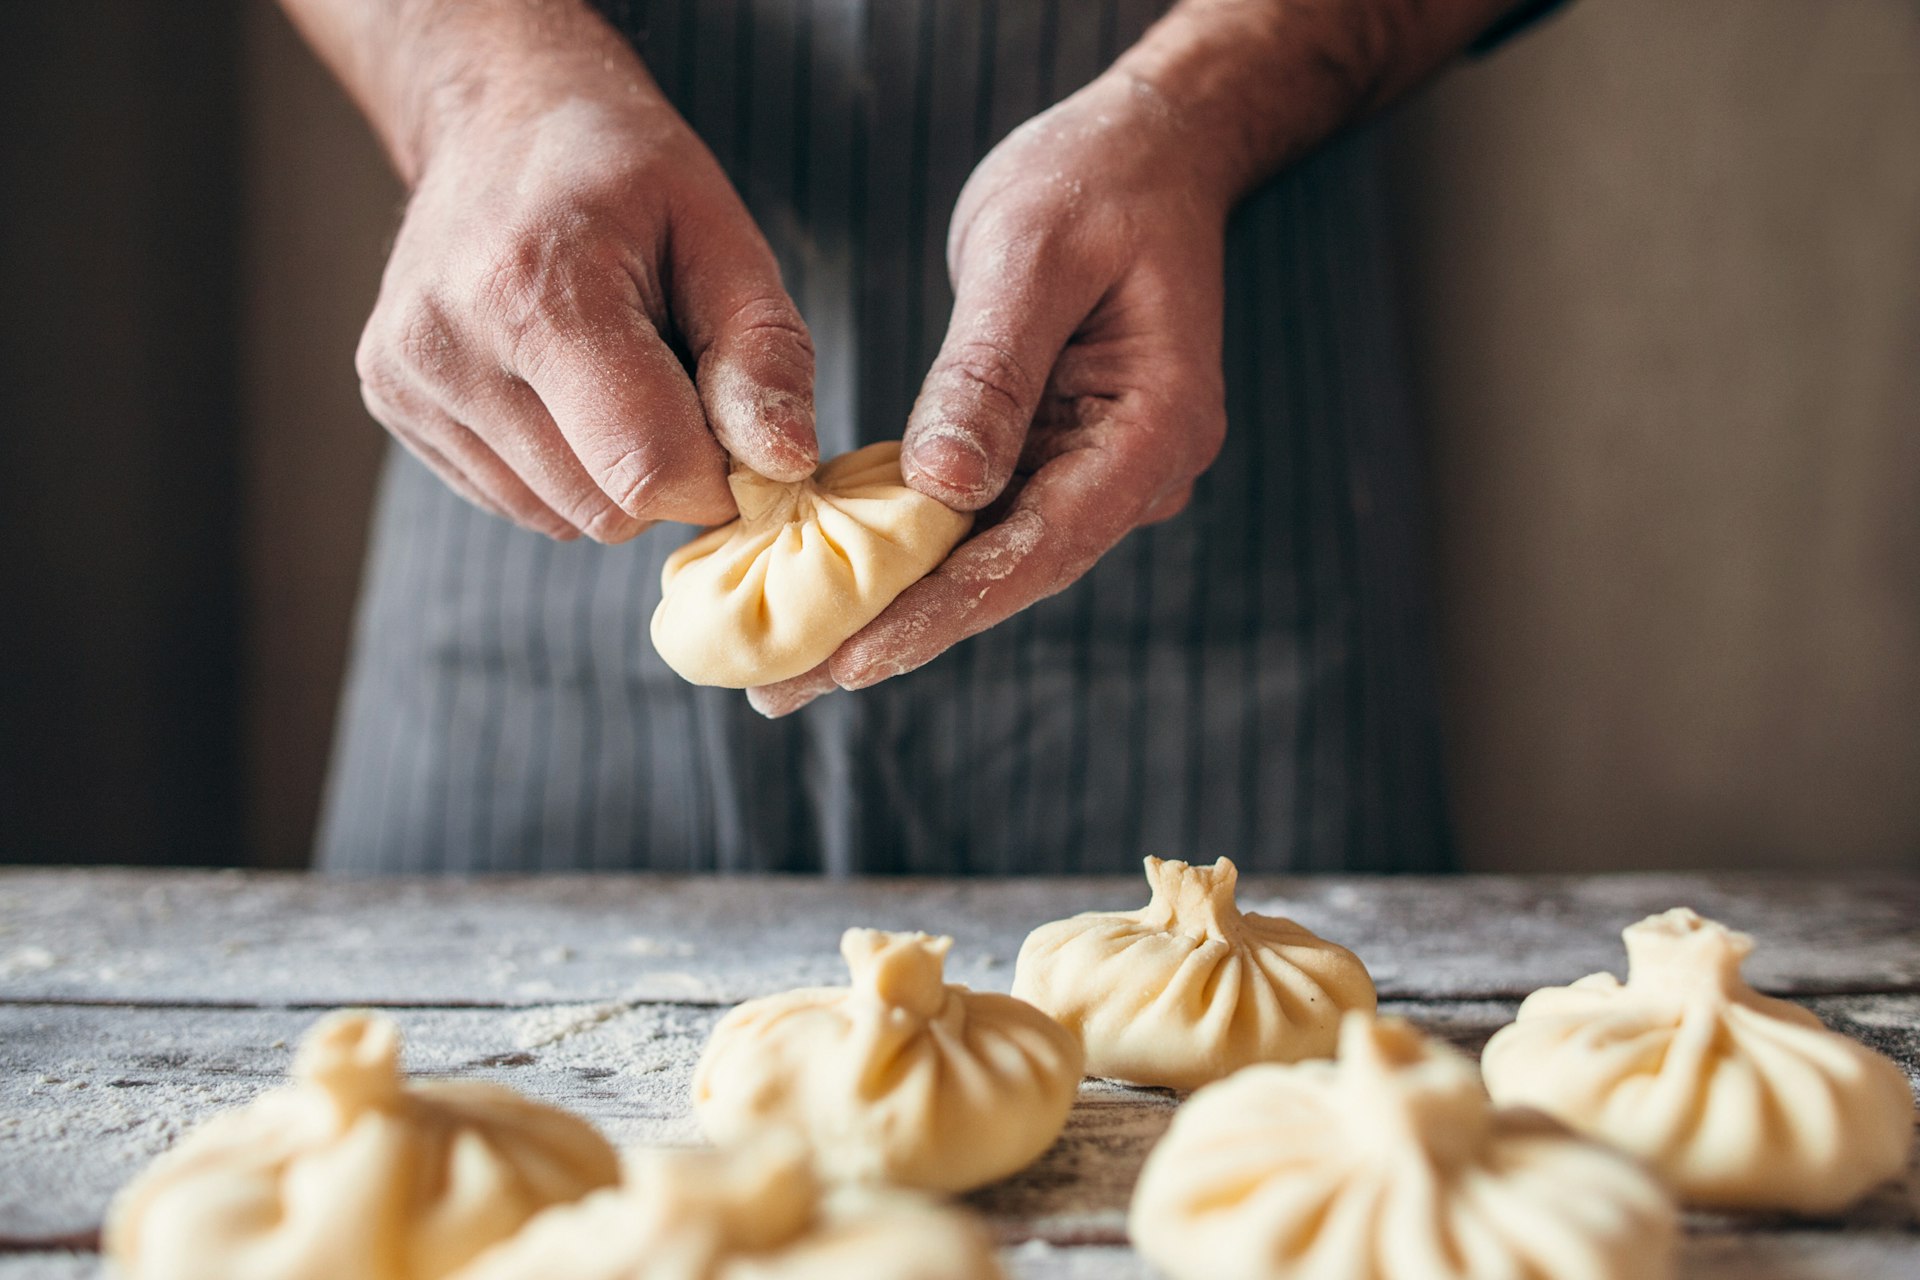 Hands prepare meat dumplings in a kitchen